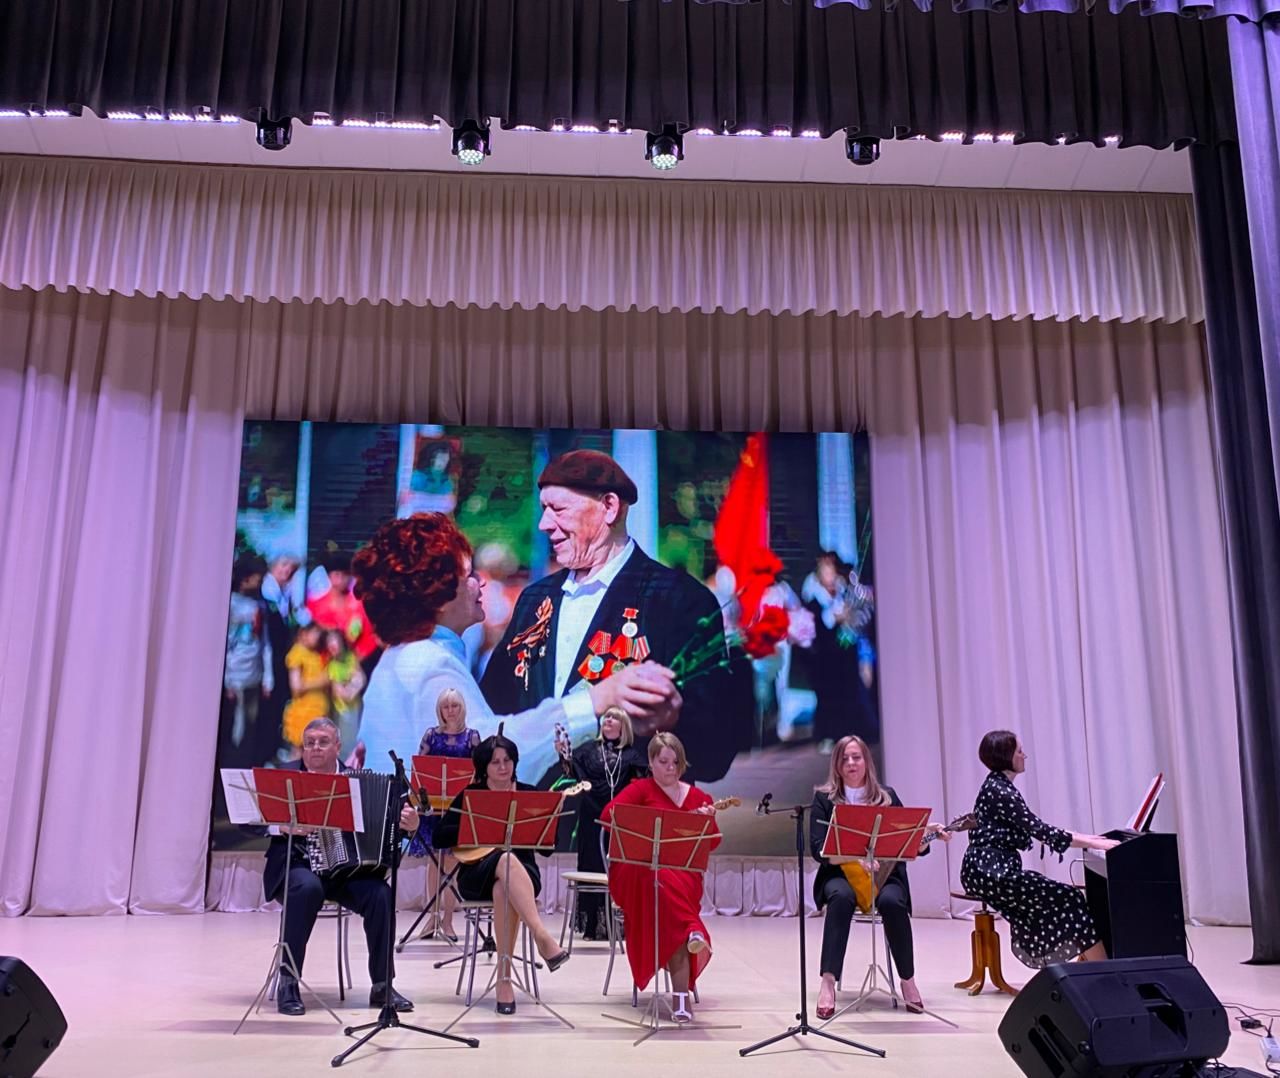 В культурном центре состоялся отчетный концерт камполянской музыкальной школы